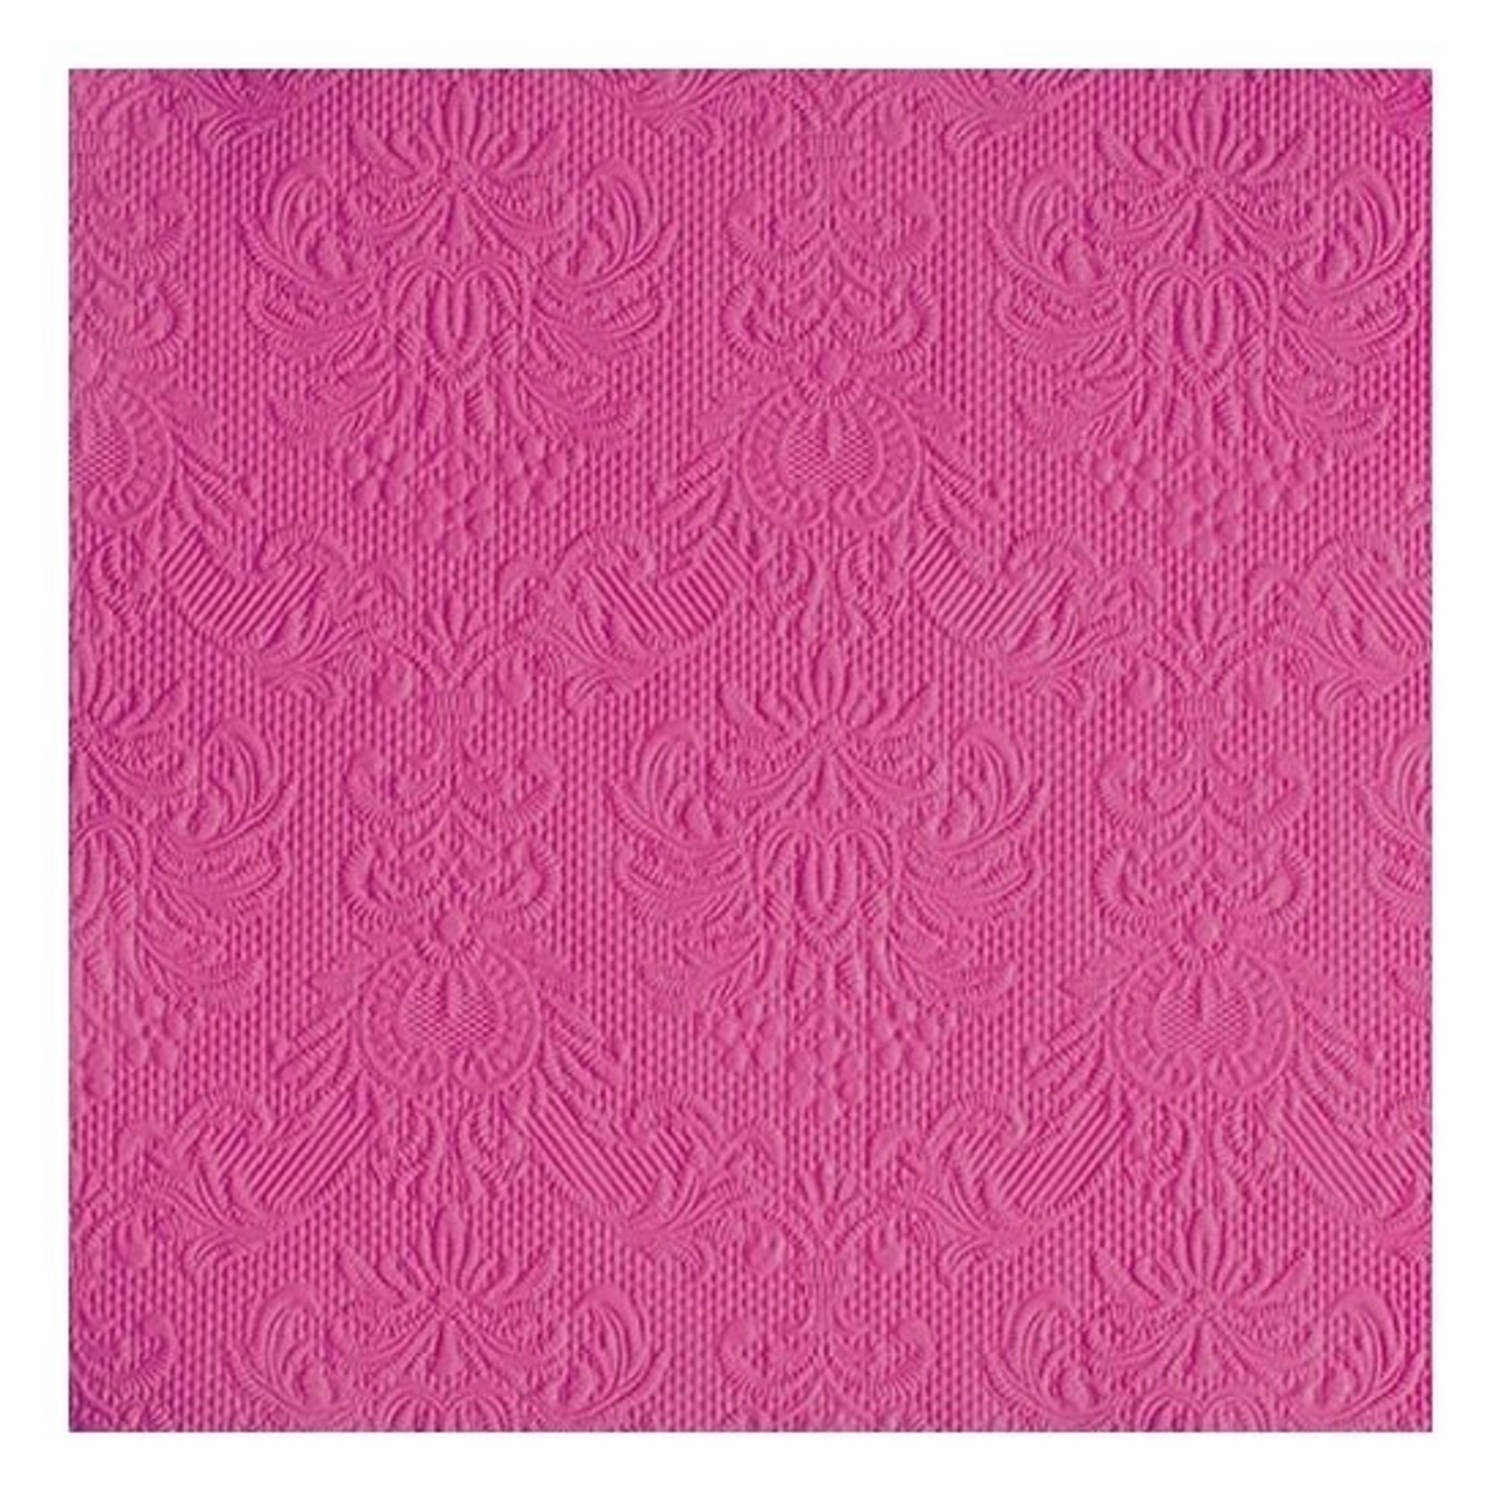 Servetten roze barok thema 3-laags 30 stuks - Feestservetten